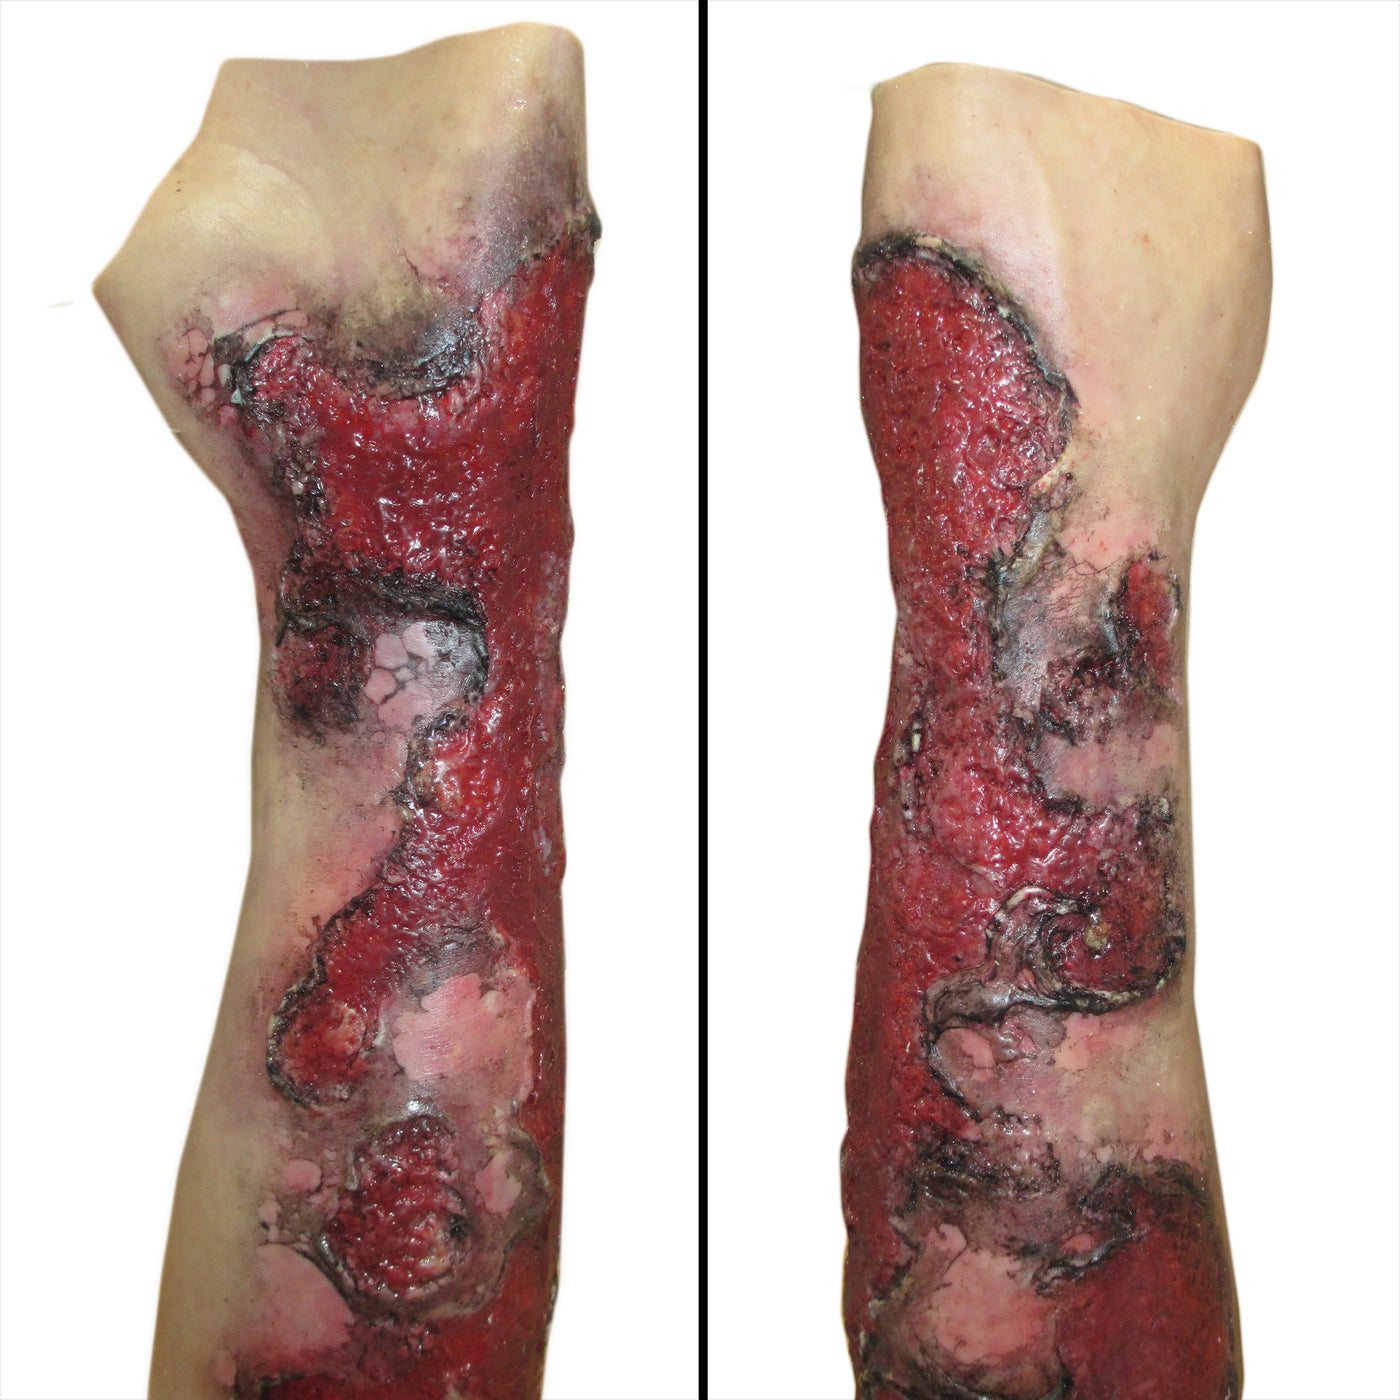 Severe Burn Forearm (Left)